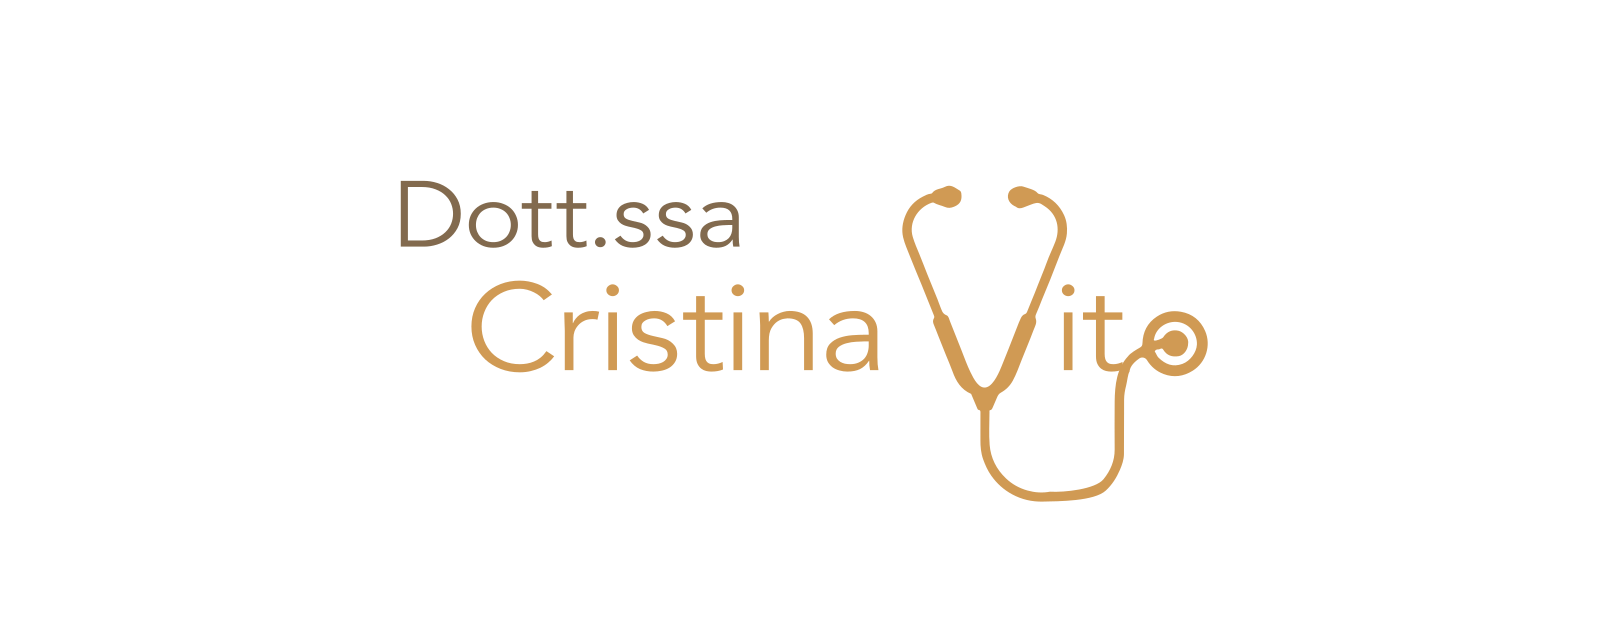 Dottoressa Cristina Vito